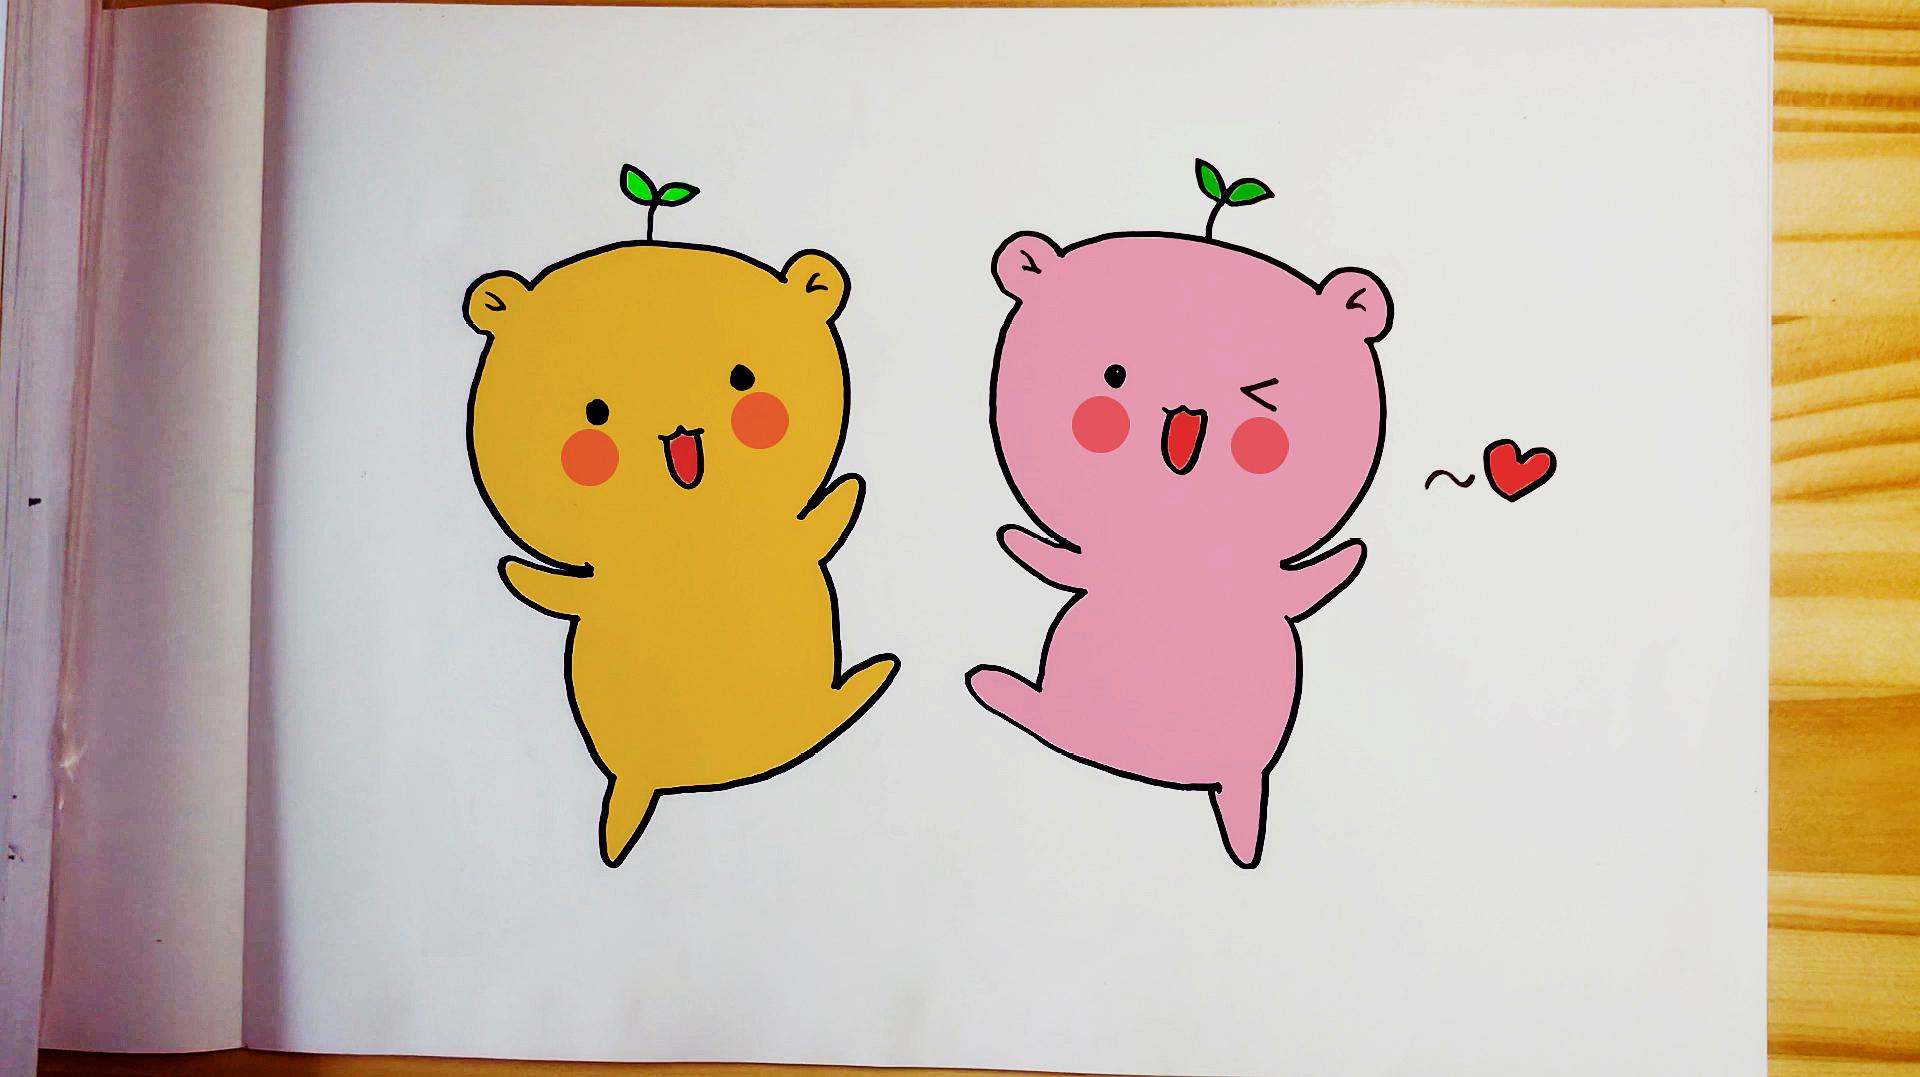 学会2只可爱的小熊简笔画,你会给它们涂上什么颜色呢?